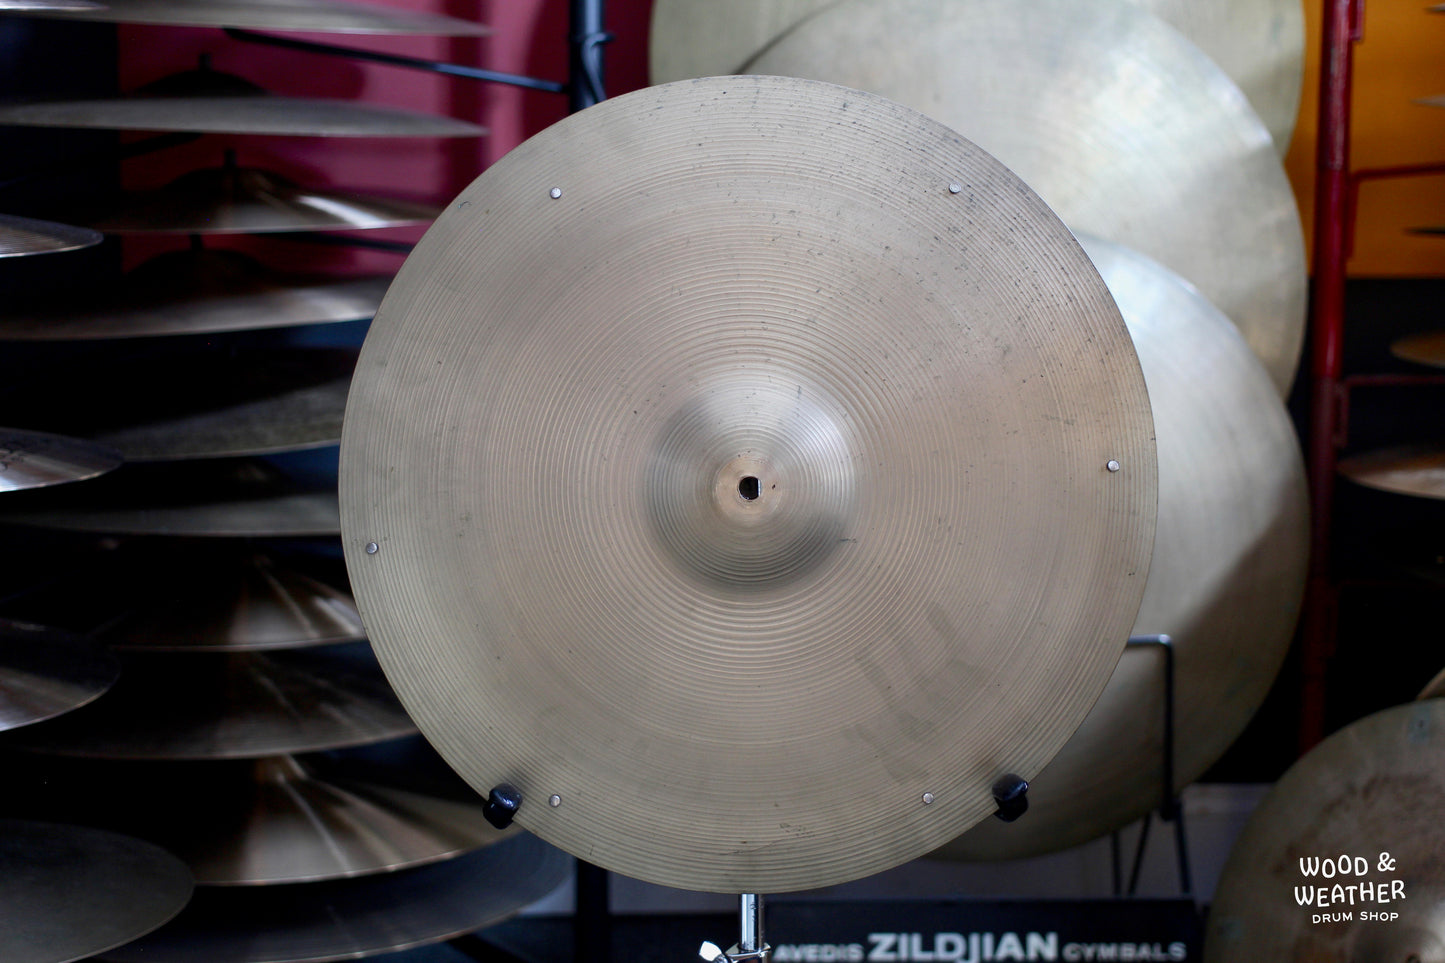 1960s A. Zildjian 18" Crash/Ride Cymbal w/ Rivets 1785g